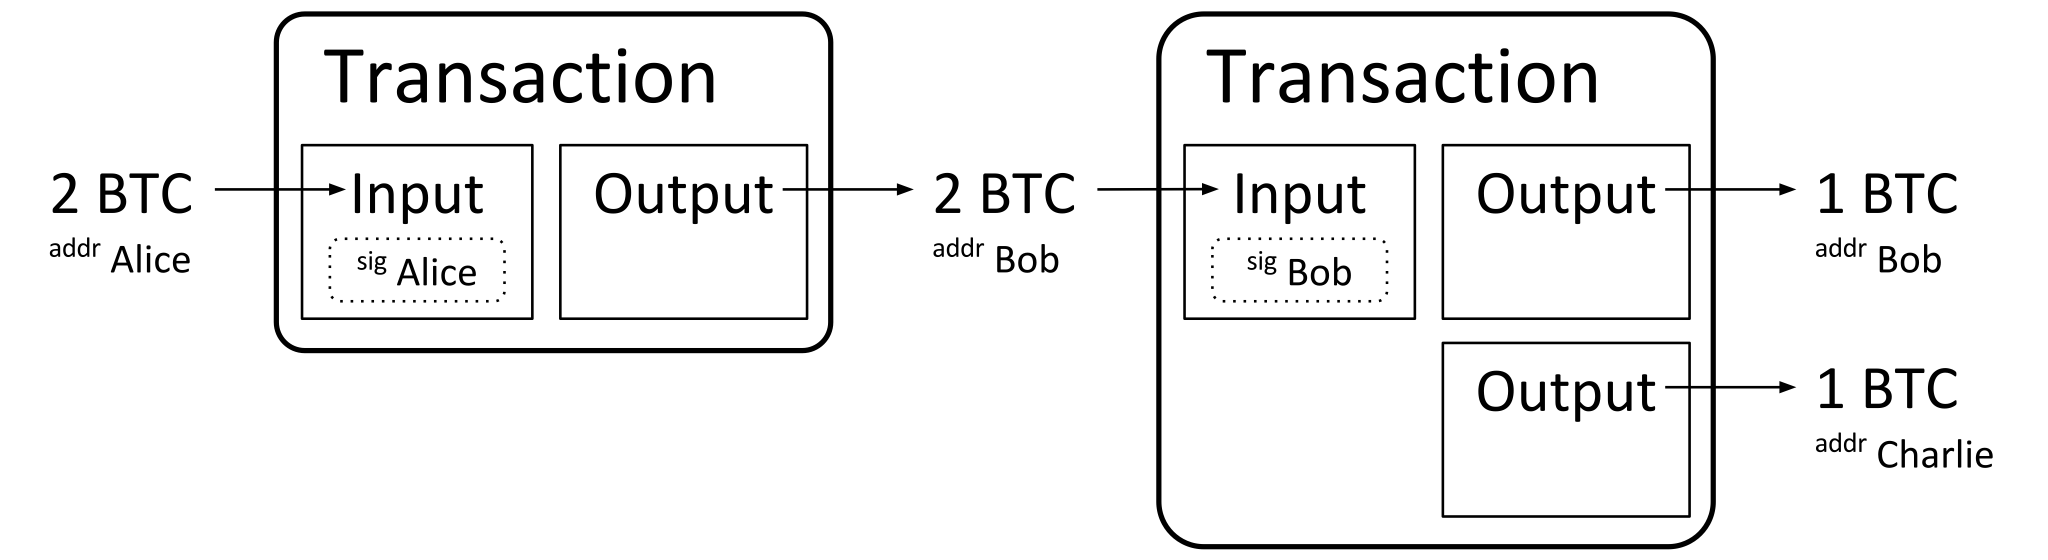 A high-level skeleton diagram of a Bitcoin transaction